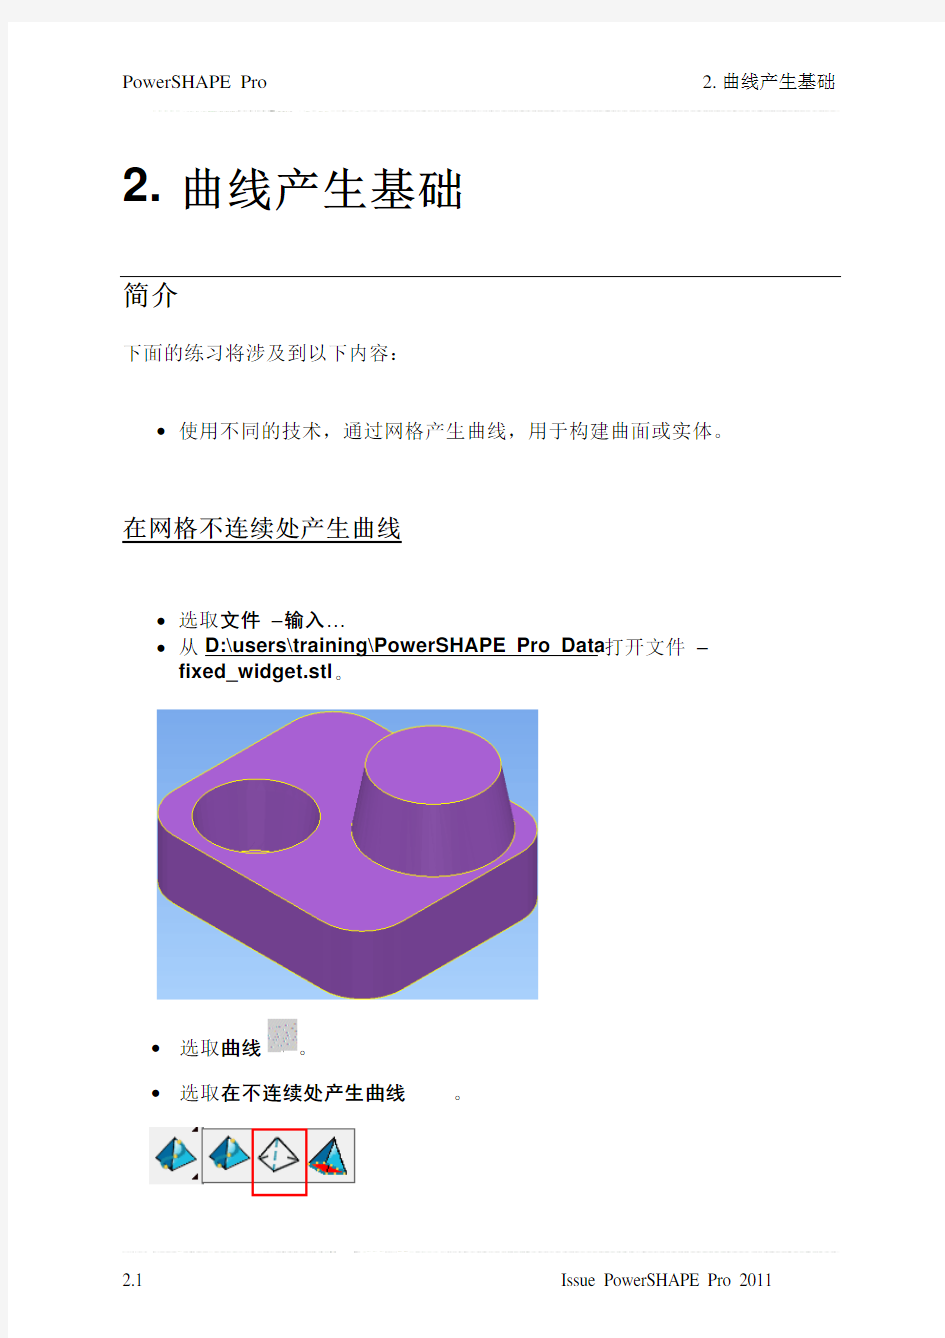 PowerSHAPE Pro 2011中文教材 02 - Basic curve generation